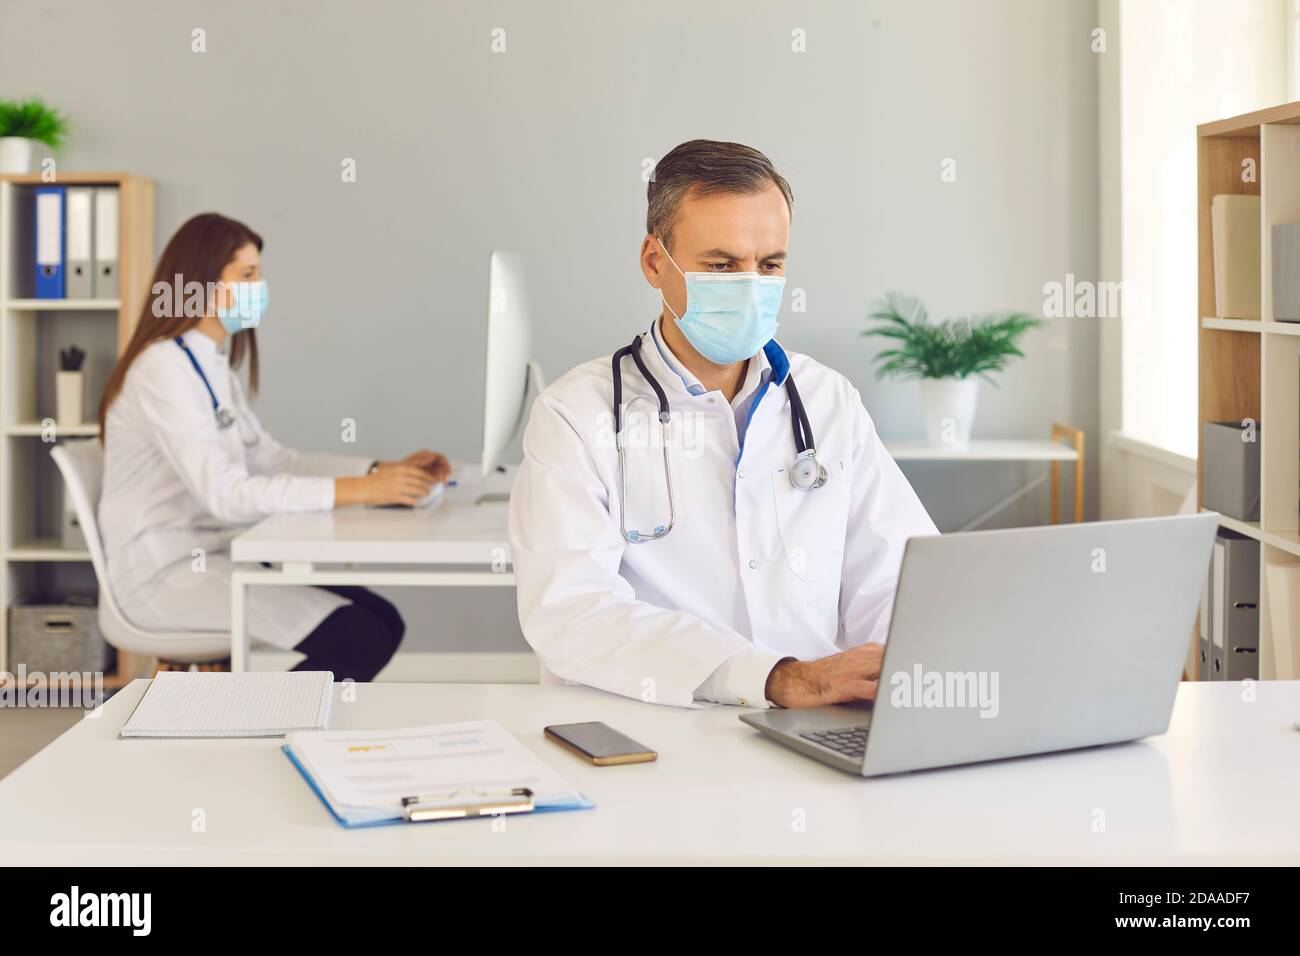 Hombre y mujer trabajadores del hospital en máscaras protectoras que trabajan en el consultorio manteniendo la distancia. Foto de stock